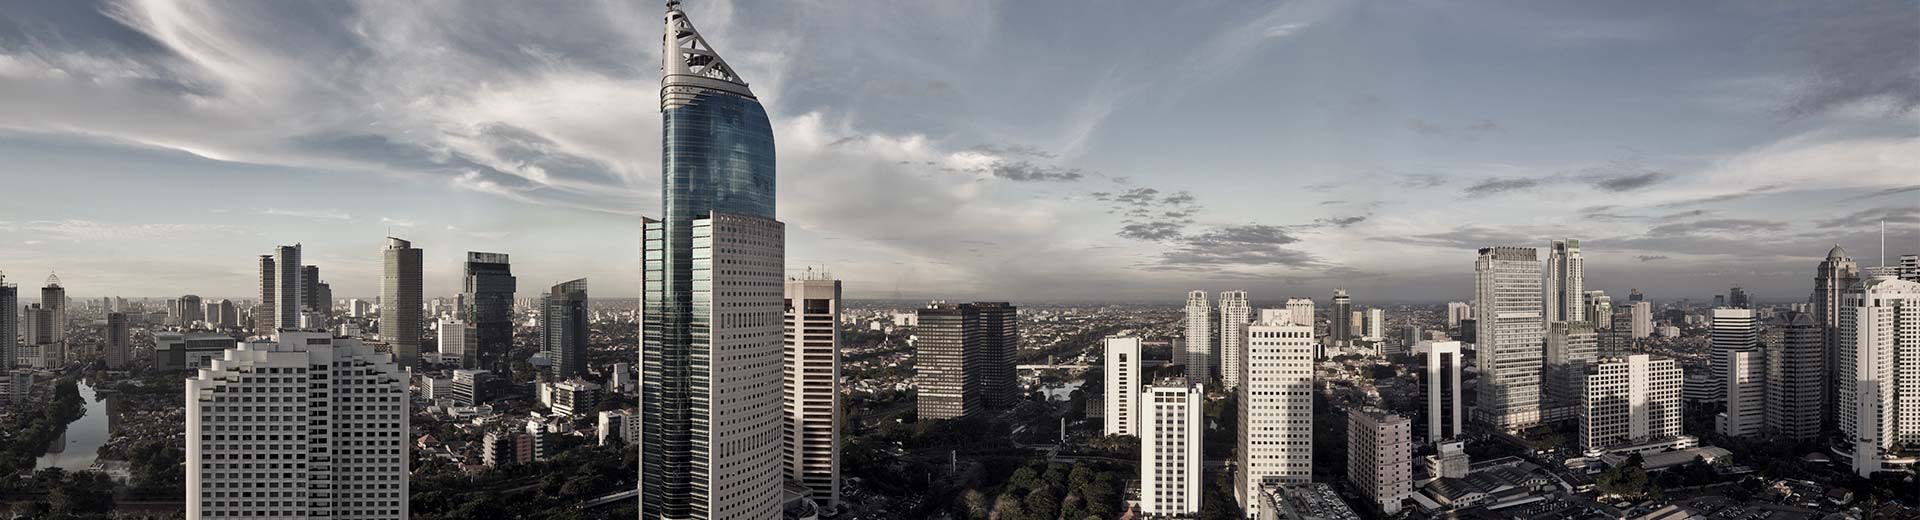 La masse tentaculaire de Jakarta s'étend jusqu'à ce que l'œil puisse voir.